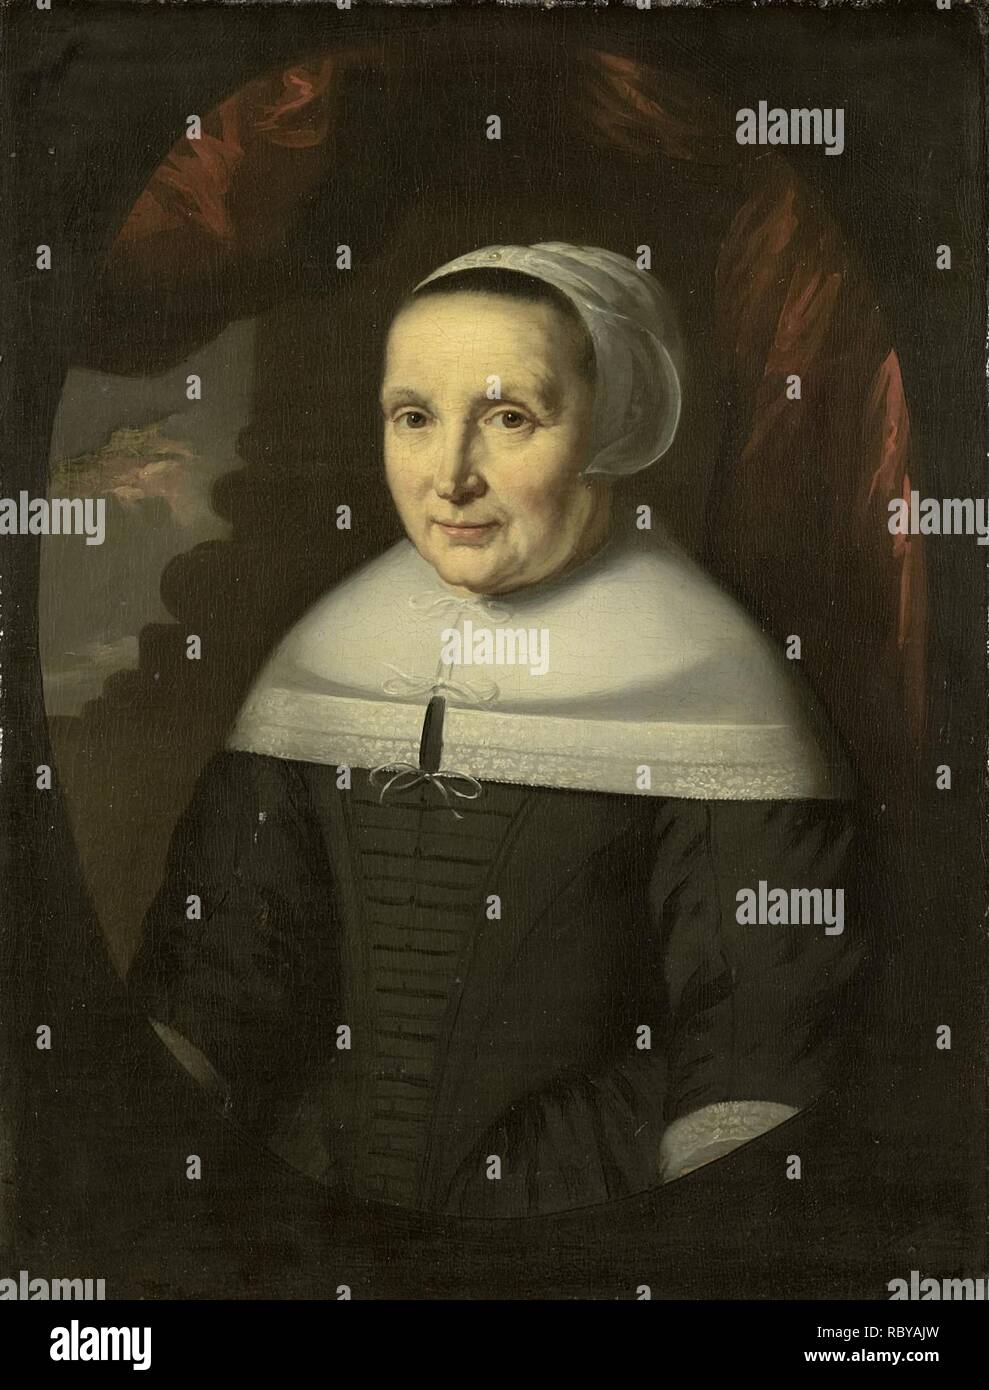 Scannen/opname 2003 Aeltje Denijs (geb 1598-99). Echtgenote van Hendrick Bastian, moeder van Dionijs Wijnands Rijksmuseum SK-A-703. Stockfoto